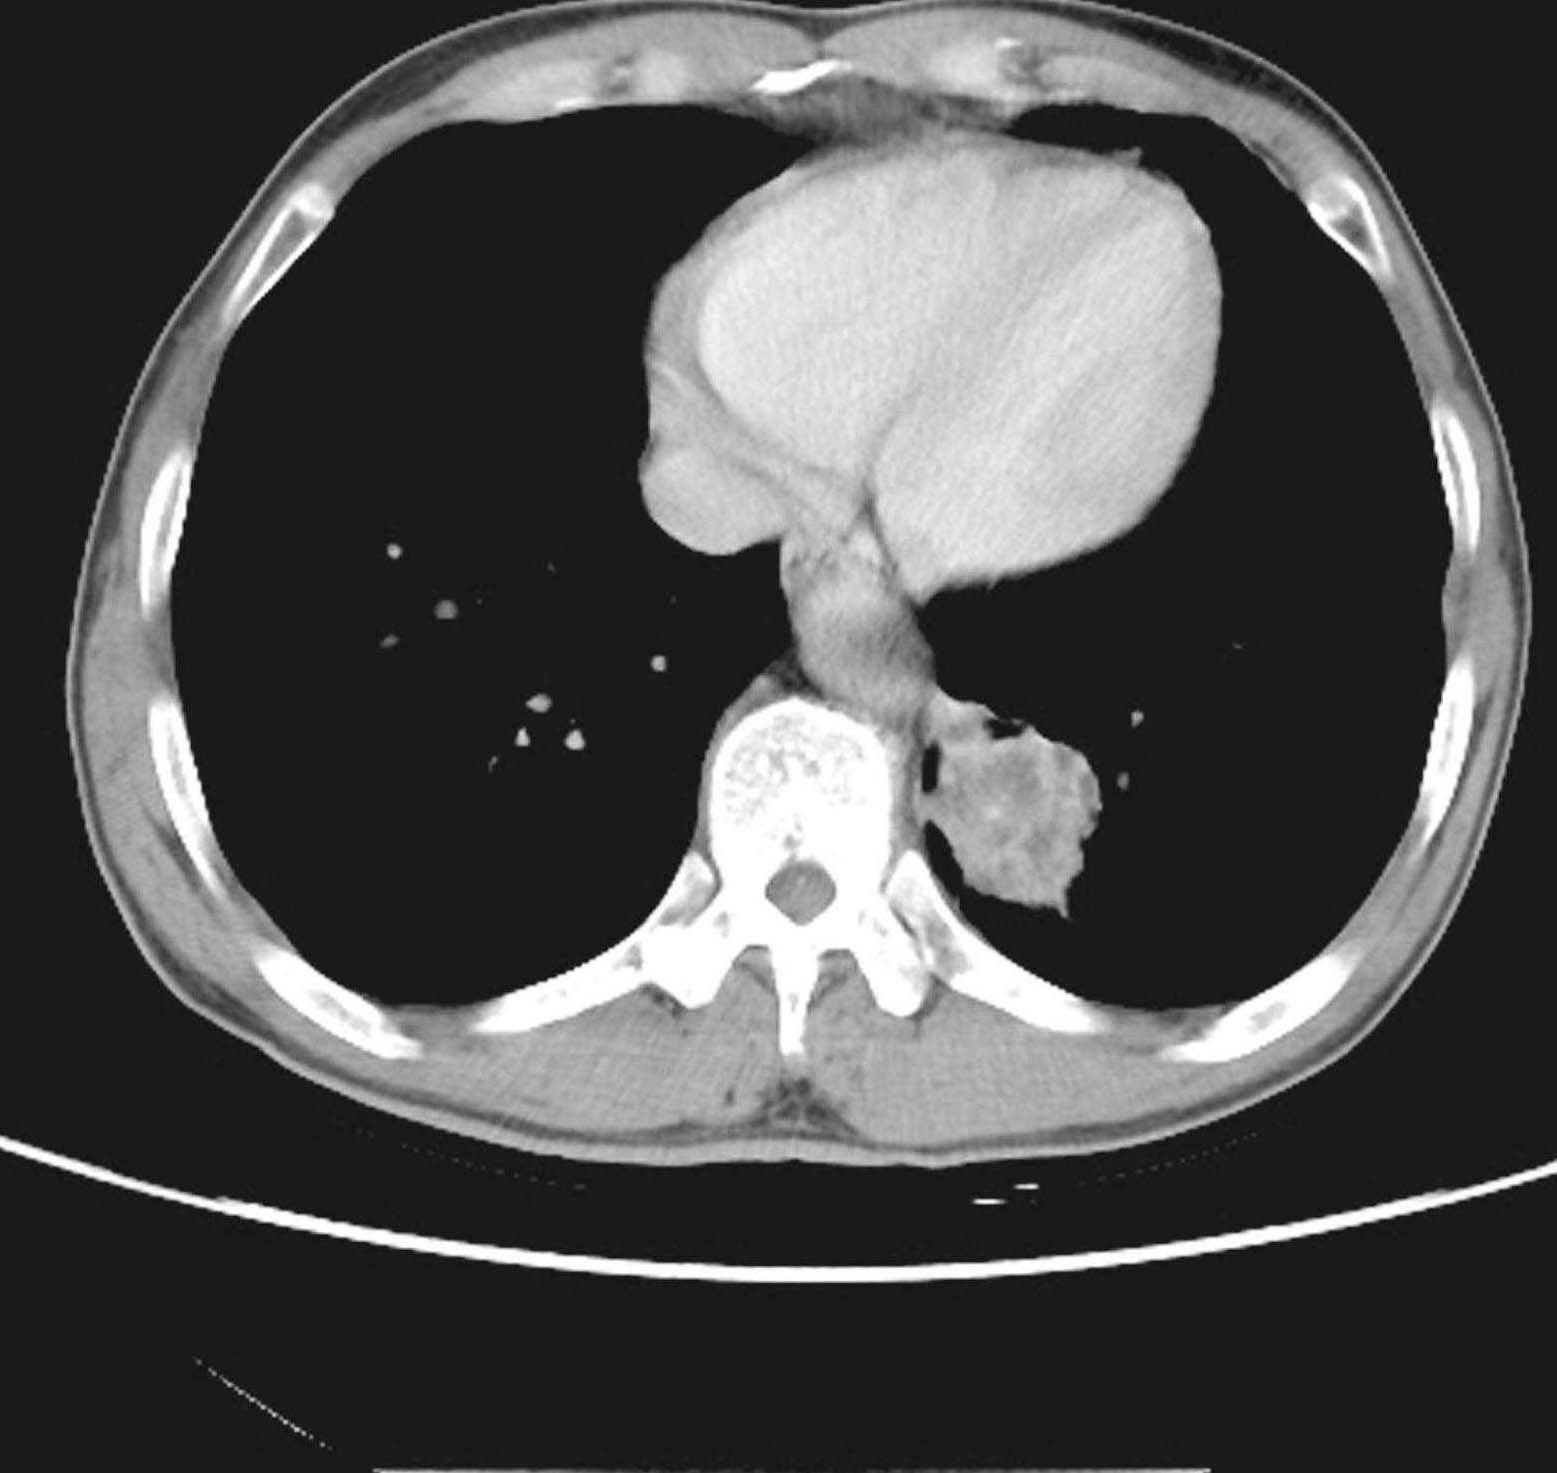 第二节 不同组织类型肺癌的CT表现